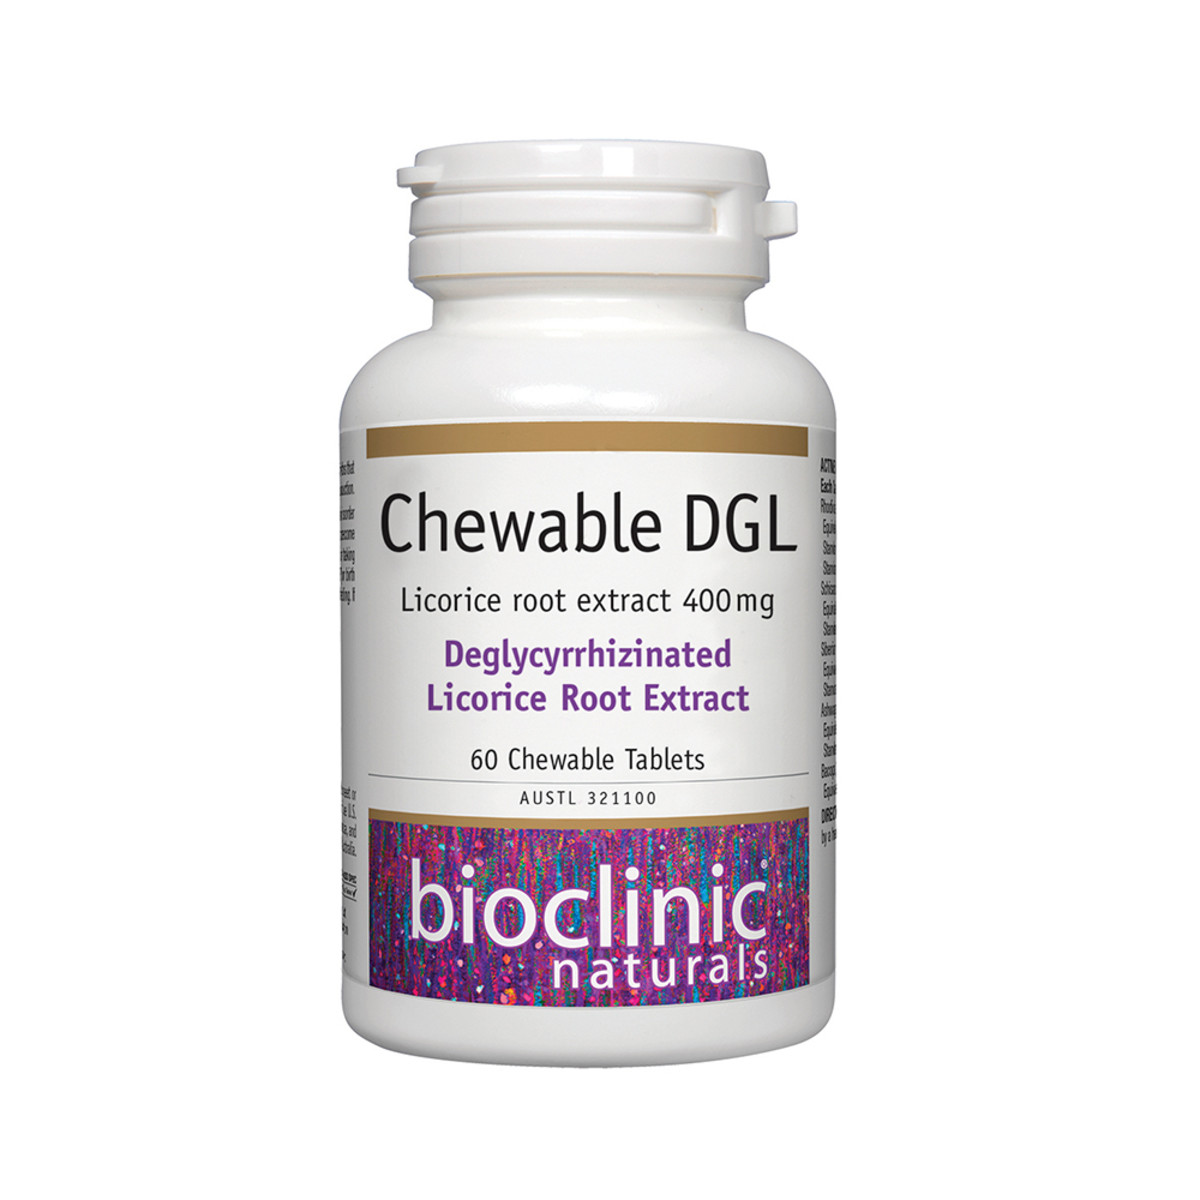 BIOCLINIC NATURALS - Chewable DGL